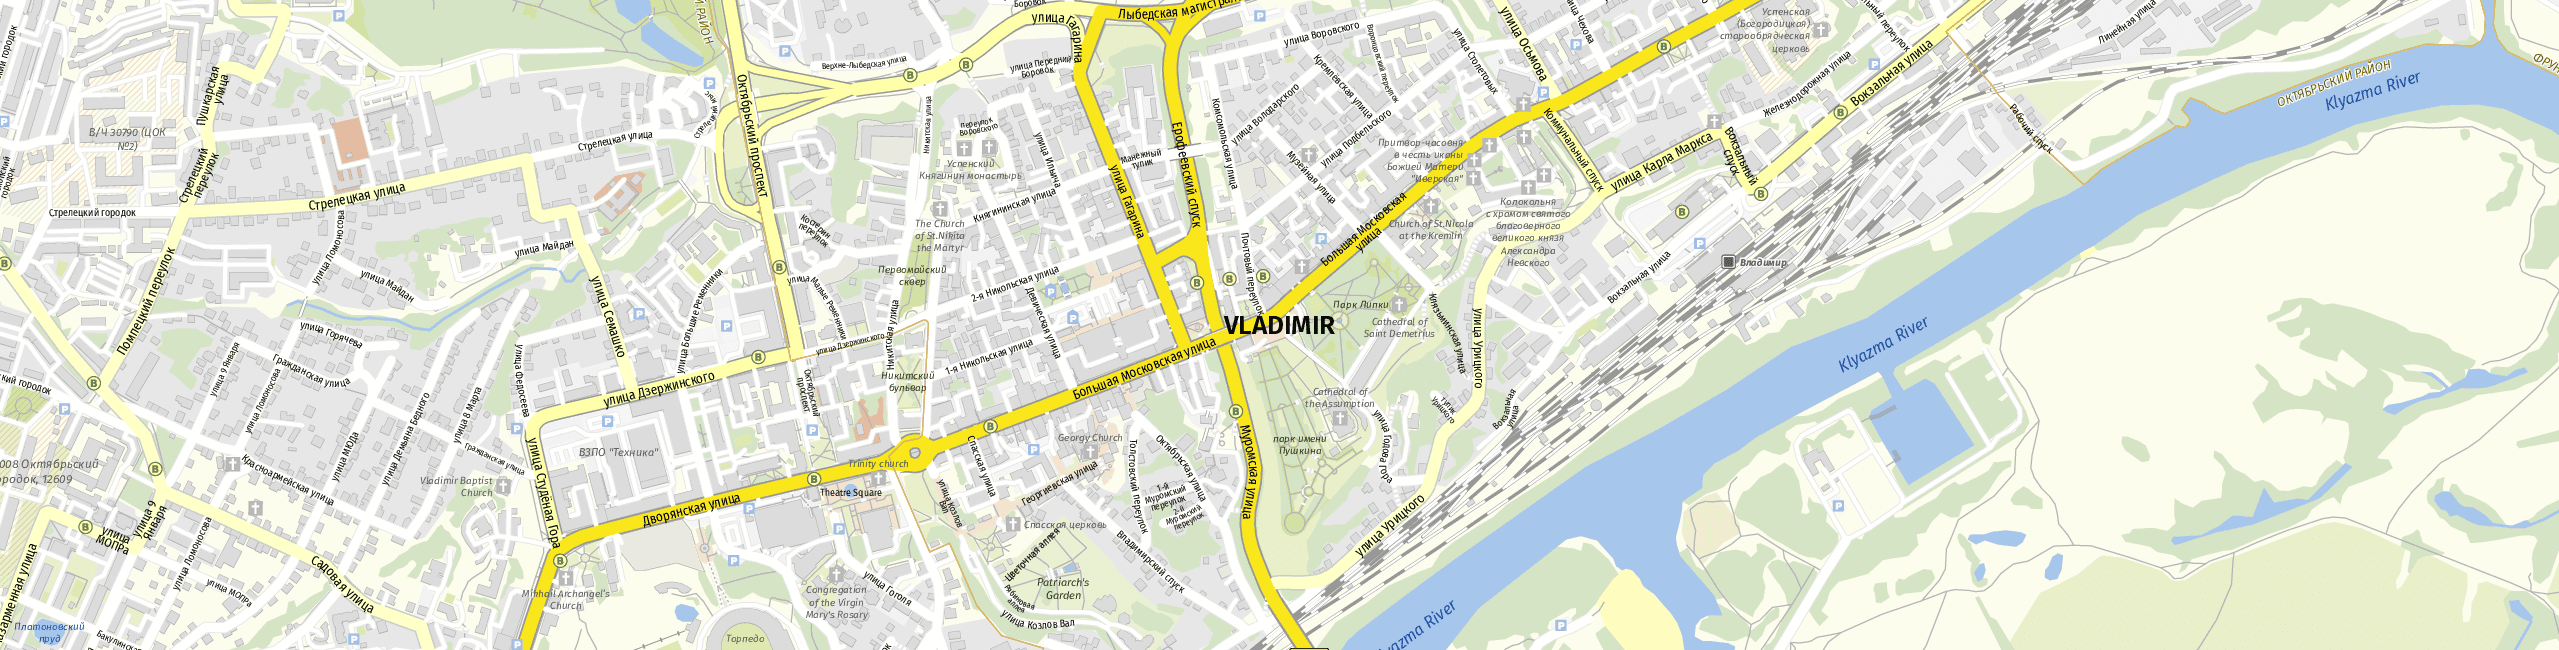 Stadtplan Wladimir zum Downloaden.